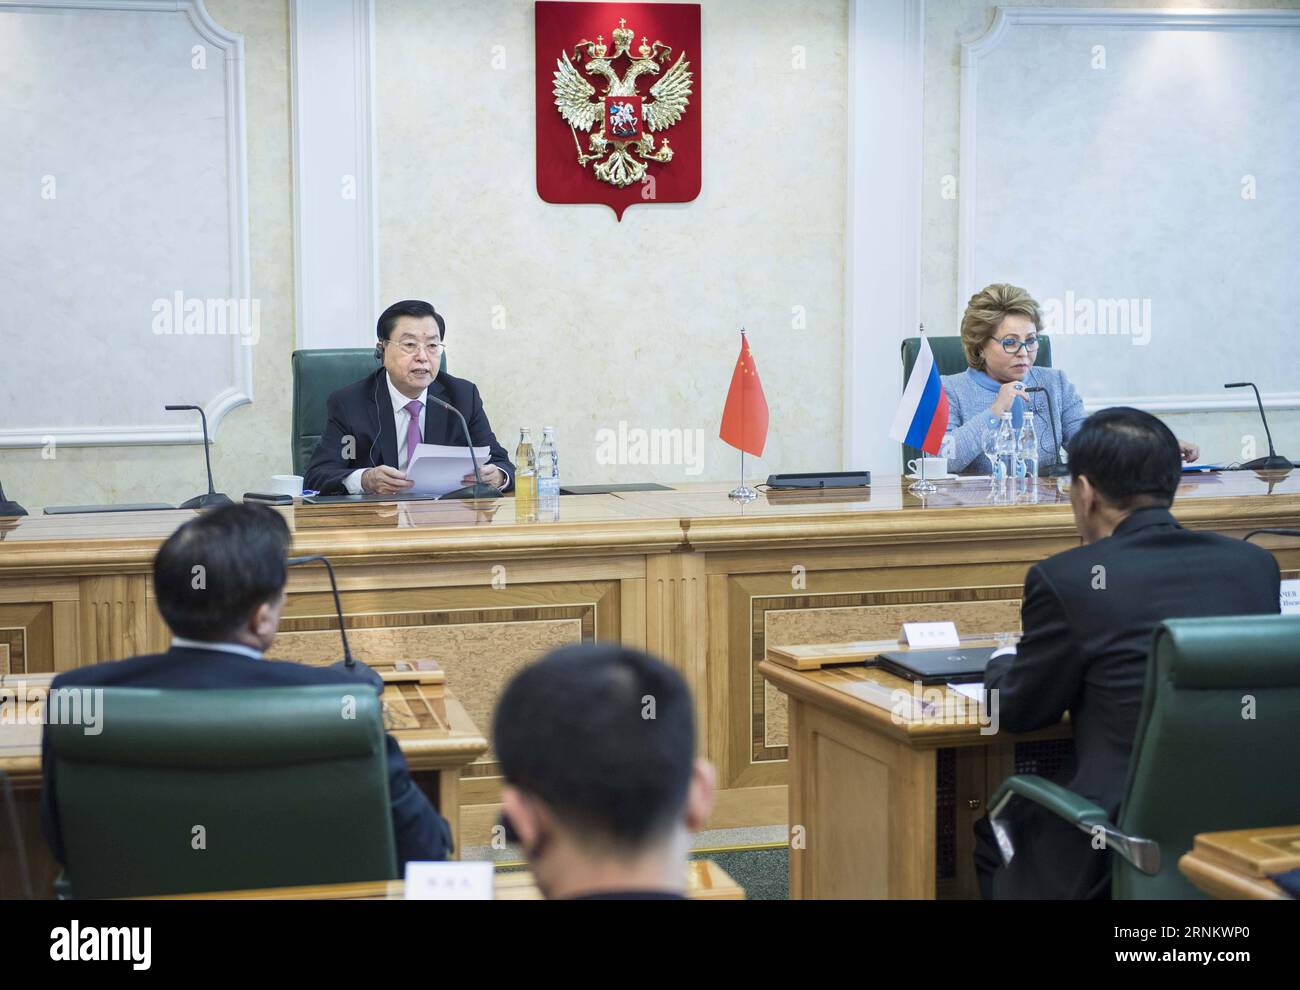 (170421) -- MOSCA, 21 aprile 2017 -- Zhang Dejiang (L), presidente del Comitato permanente del Congresso nazionale del popolo cinese (NPC), e la presidente del Consiglio della Federazione Russa Valentina Matviyenko co-presidente della terza riunione del comitato di cooperazione tra l'NPC e il parlamento russo, a Mosca, capitale della Russia, 19 aprile 2017. ) (Lb) RUSSIA-CINA-ZHANG DEJIANG-VISIT LixTao PUBLICATIONxNOTxINxCHN Mosca 21 aprile 2017 Zhang Dejiang l Presidente del Congresso del Comitato Thing delle celebrità nazionali cinesi NPC e Presidente del Consiglio della Federazione Russa Valentina Matviyenko Co Chair Foto Stock